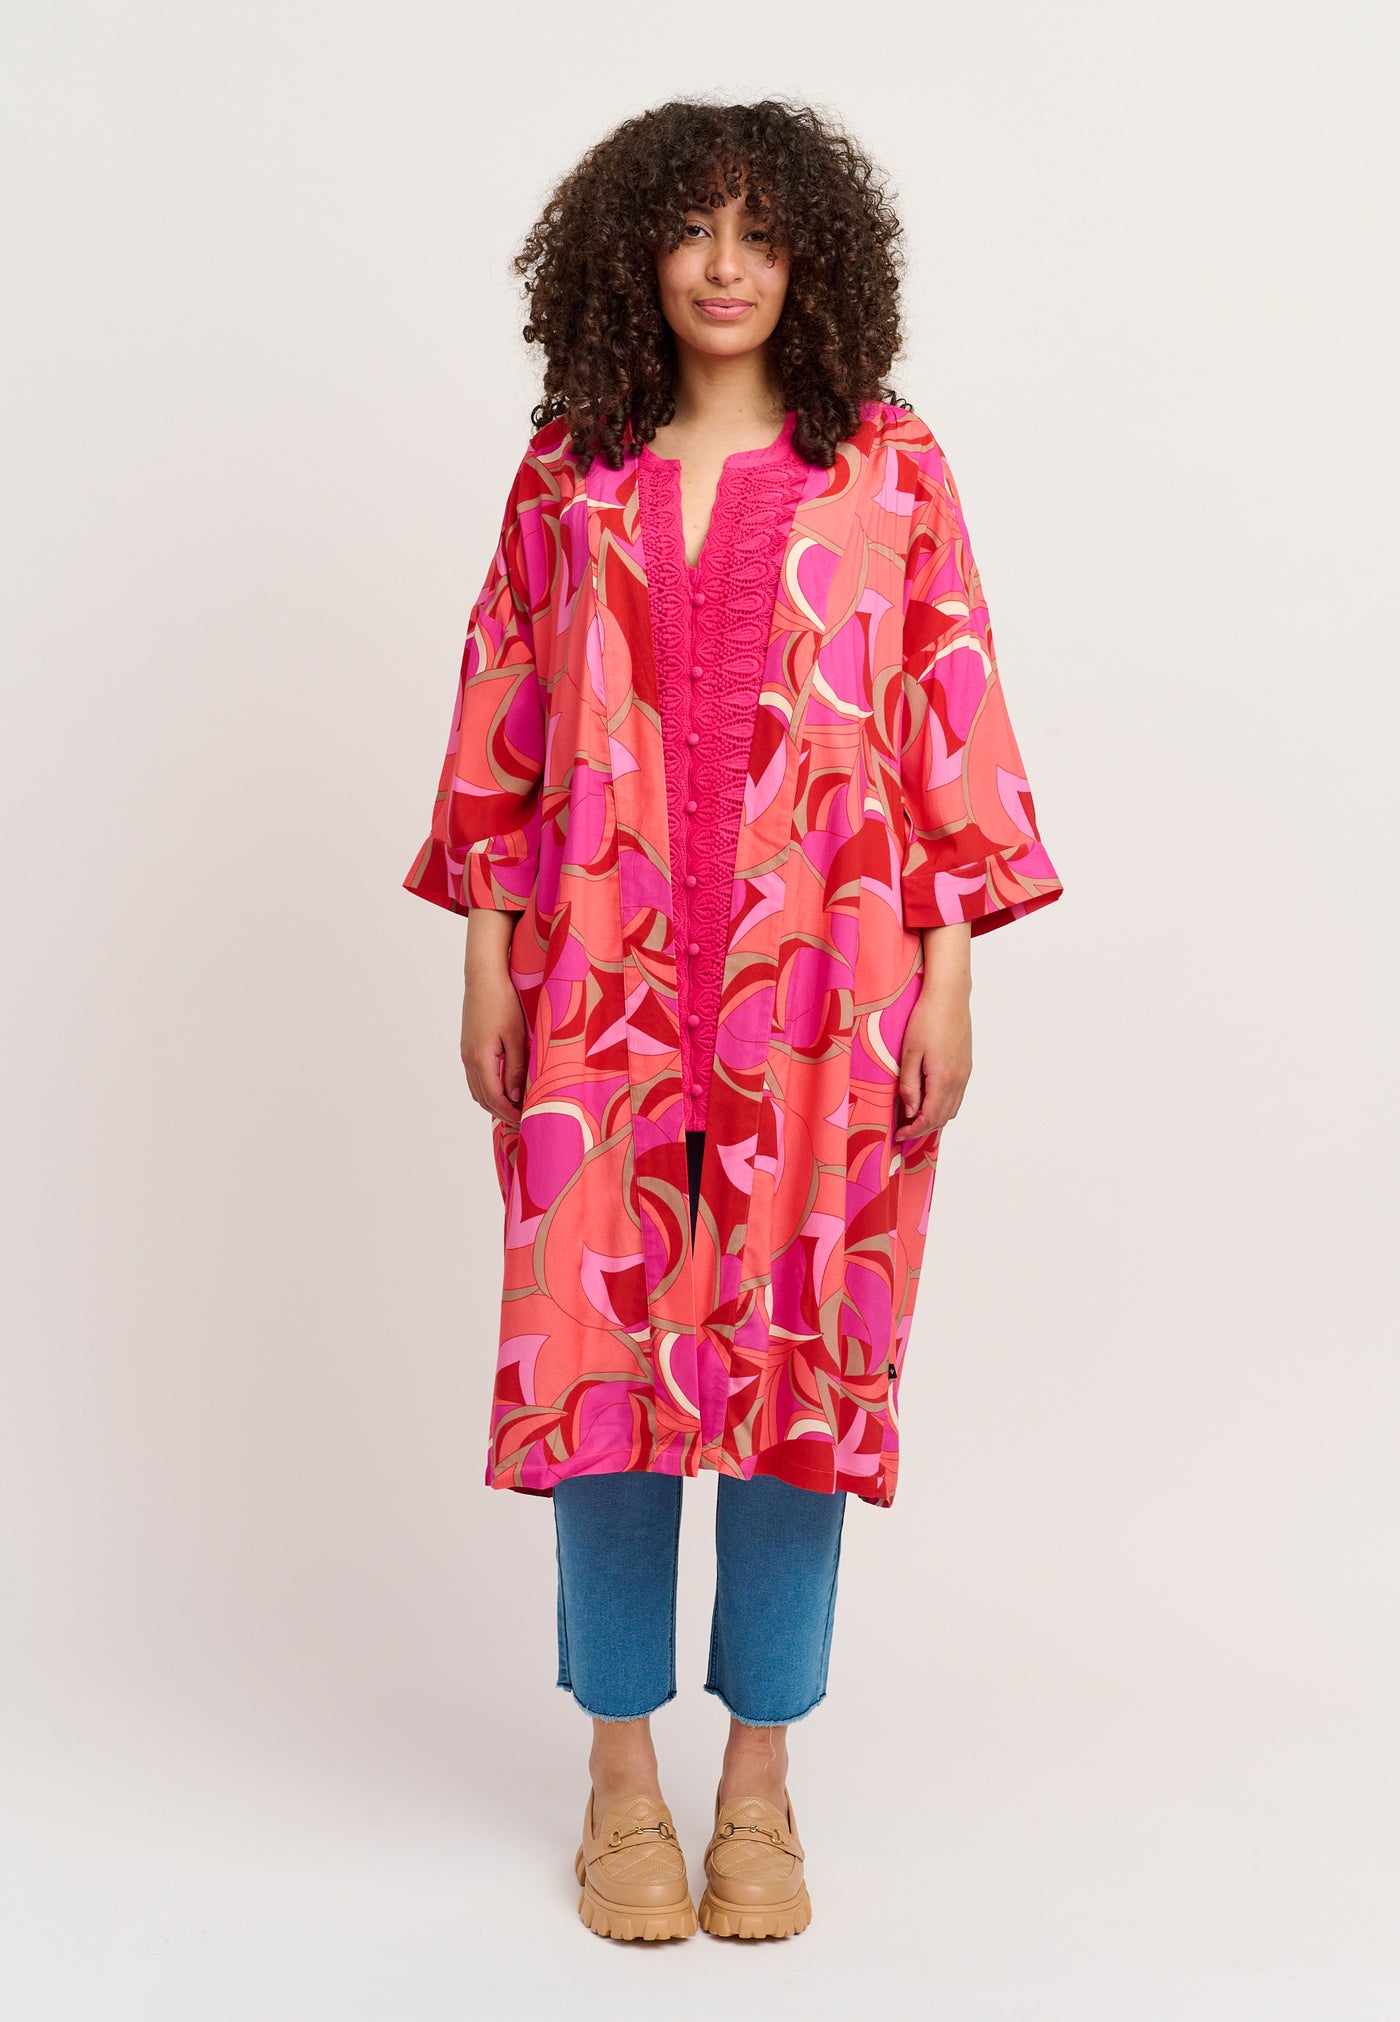 Adia ADEsta Kimono 6450 Fuchsia Pink